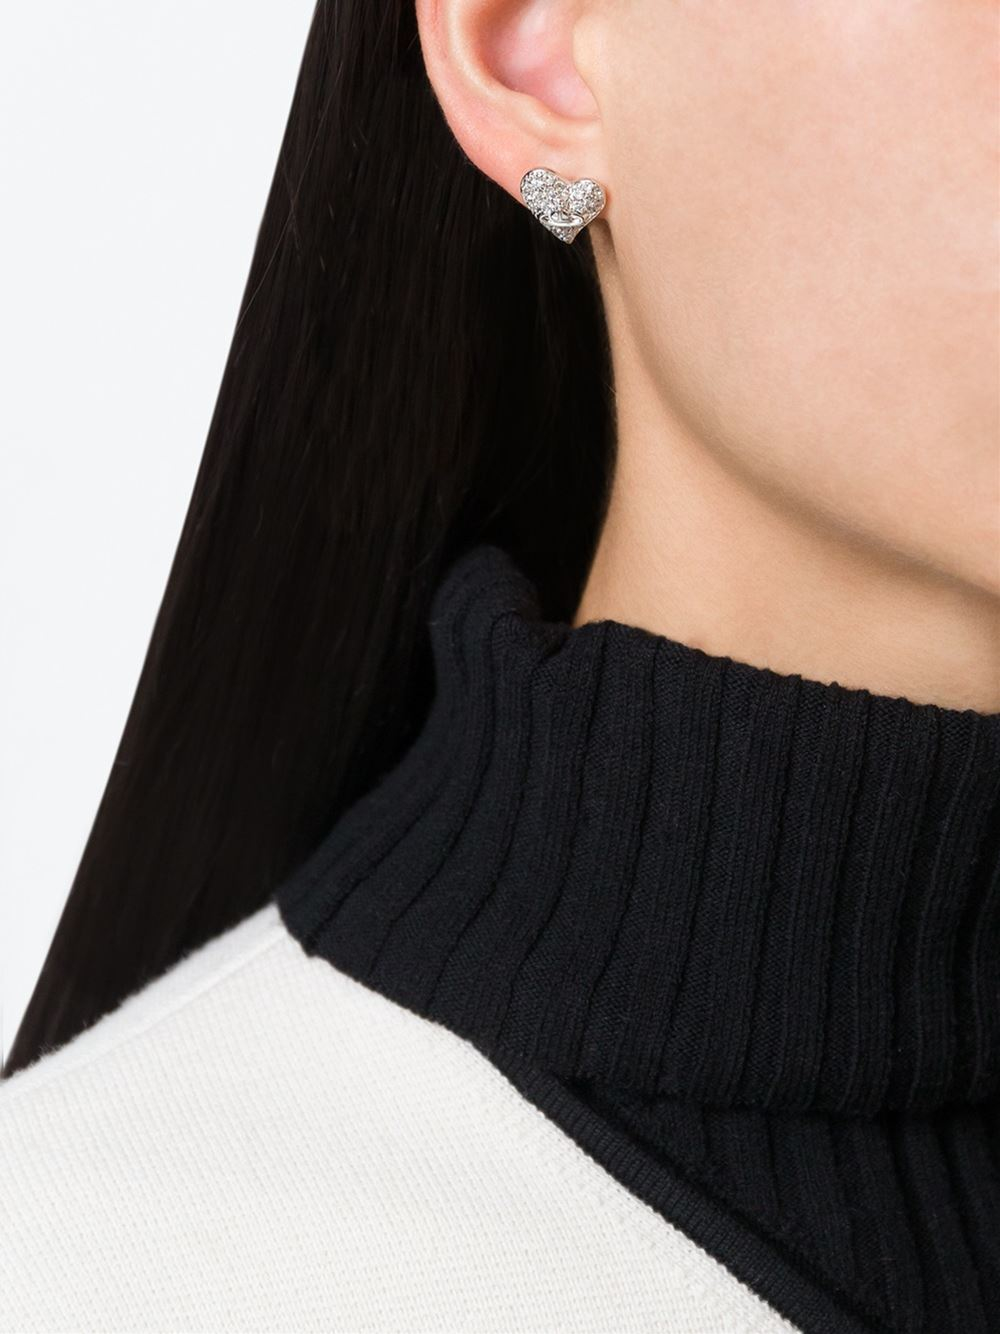 Vivienne Westwood Anglomania 'diamante Heart' Stud Earrings in 